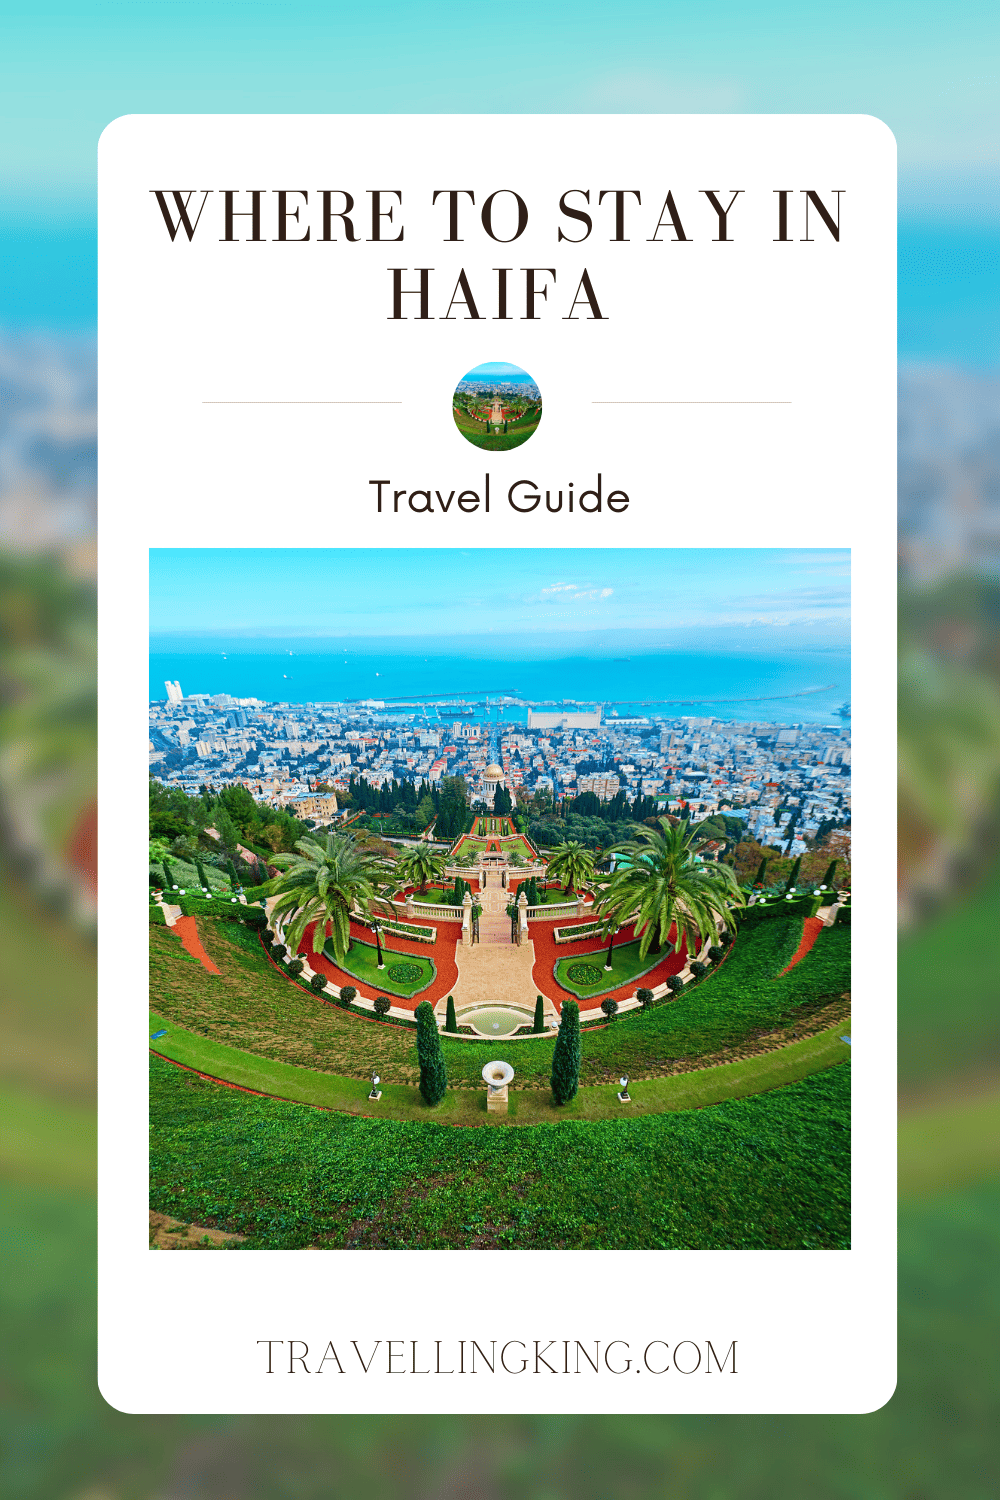 Where to stay in Haifa